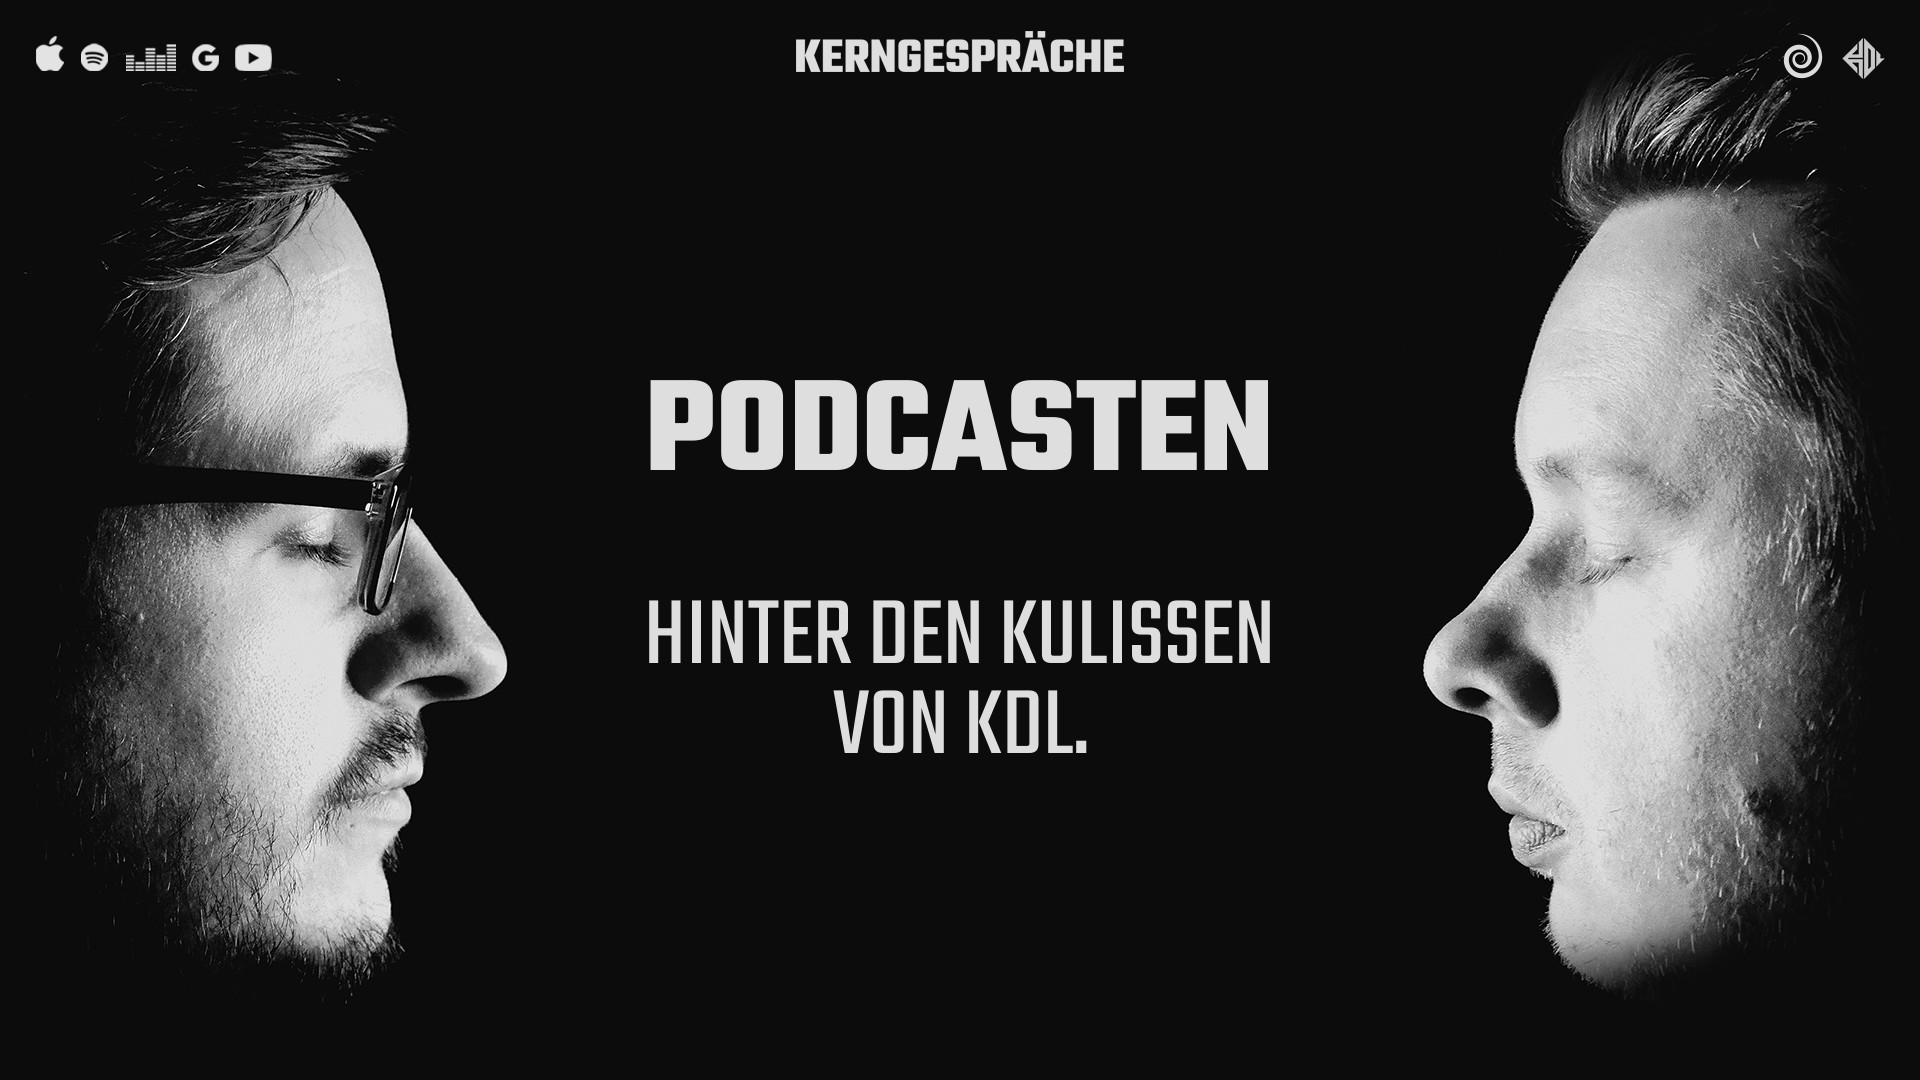 Podcasten: hinter den Kulissen von KDL.